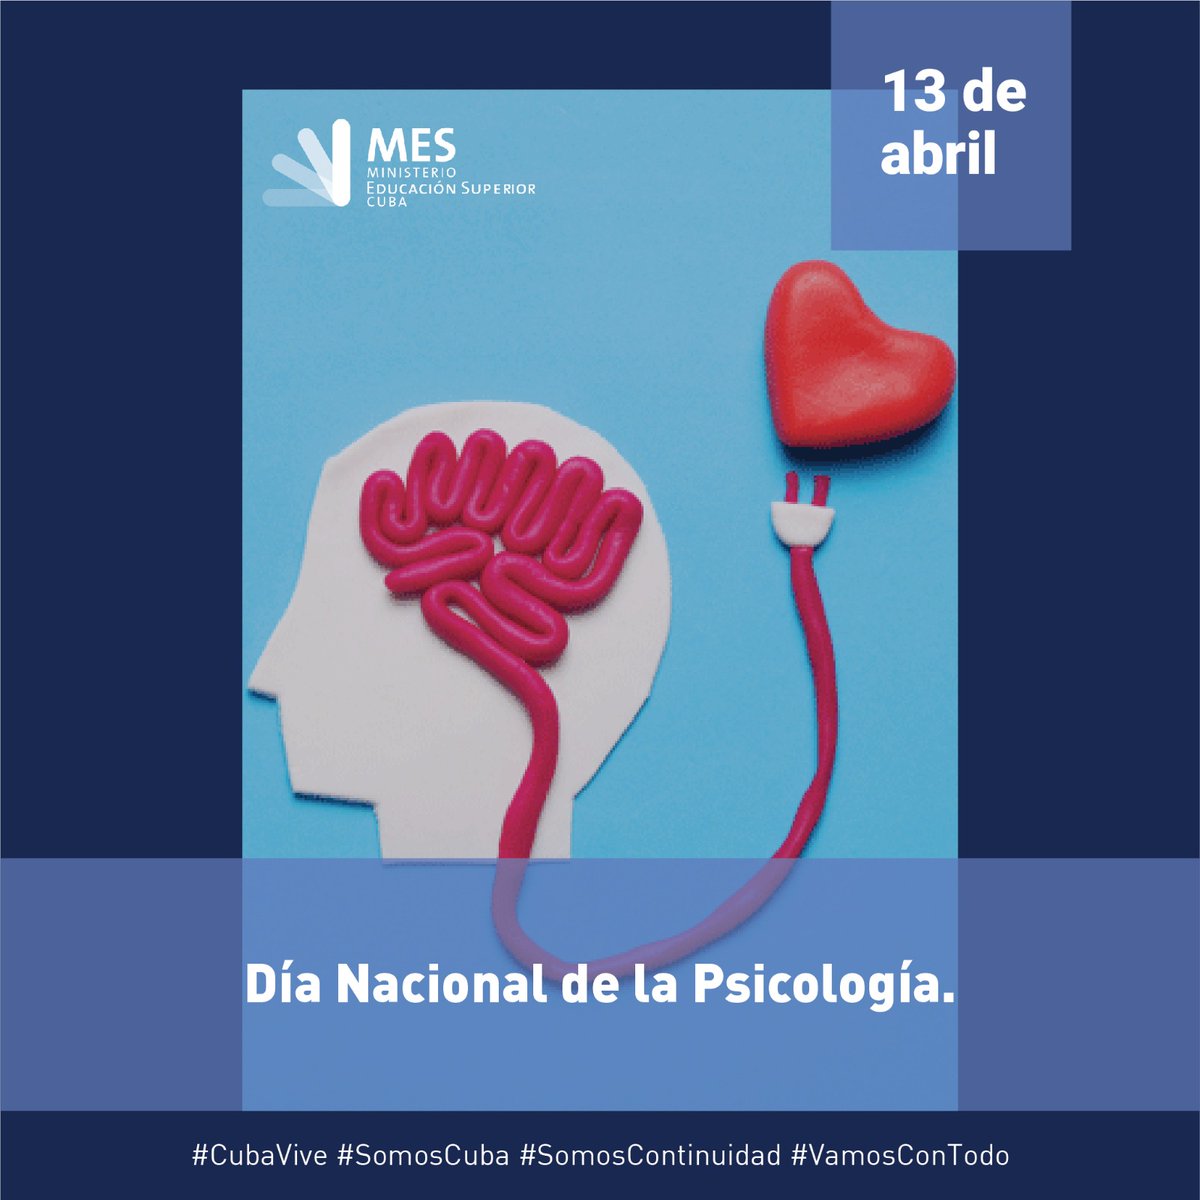 ¡Hoy celebramos el Día Nacional de la Psicología! 🇨🇺💡 Reconocemos el importante trabajo de los psicólogos cubanos en el cuidado de la salud mental y el bienestar de la población. ¡Gracias por su dedicación y compromiso! #DíaDeLaPsicologíaCubana #SaludMental #Bienestar